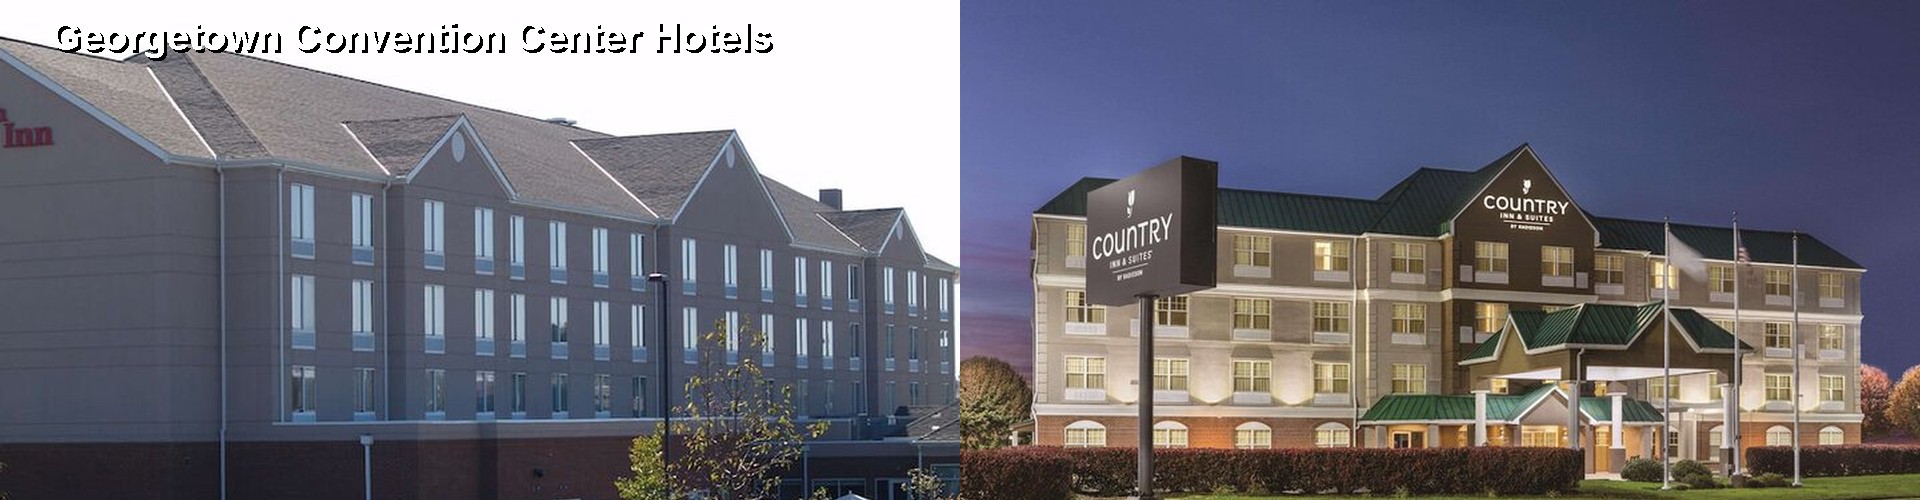 5 Best Hotels near Georgetown Convention Center